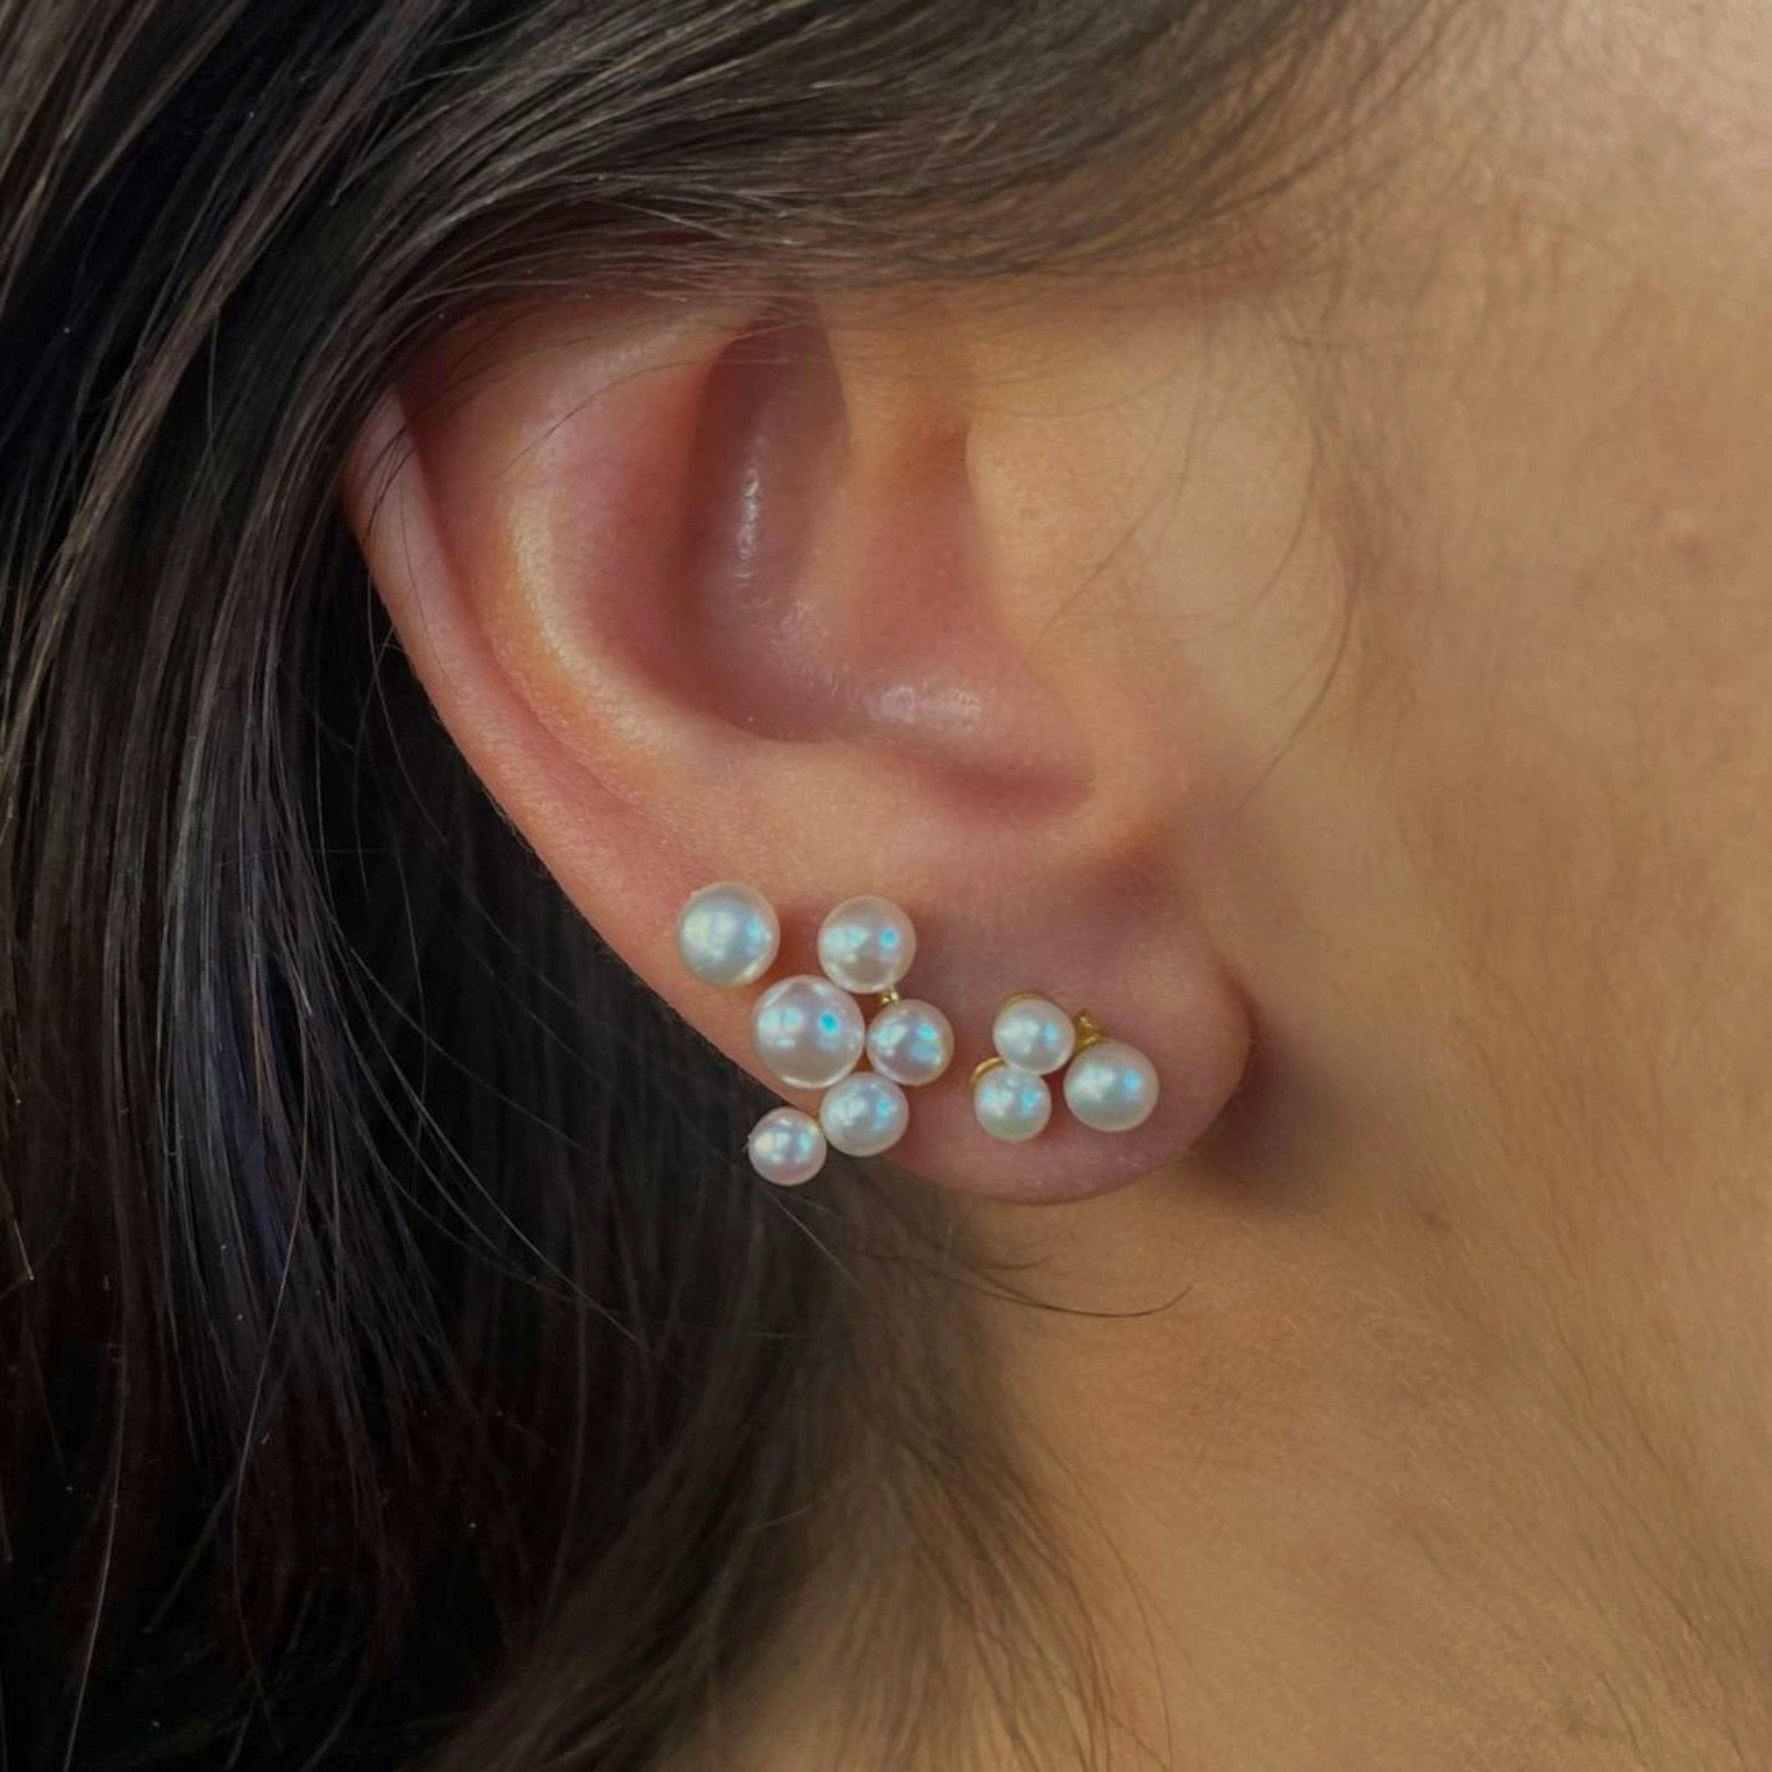 Bloom Berries Earring van STINE A Jewelry in Verguld-Zilver Sterling 925